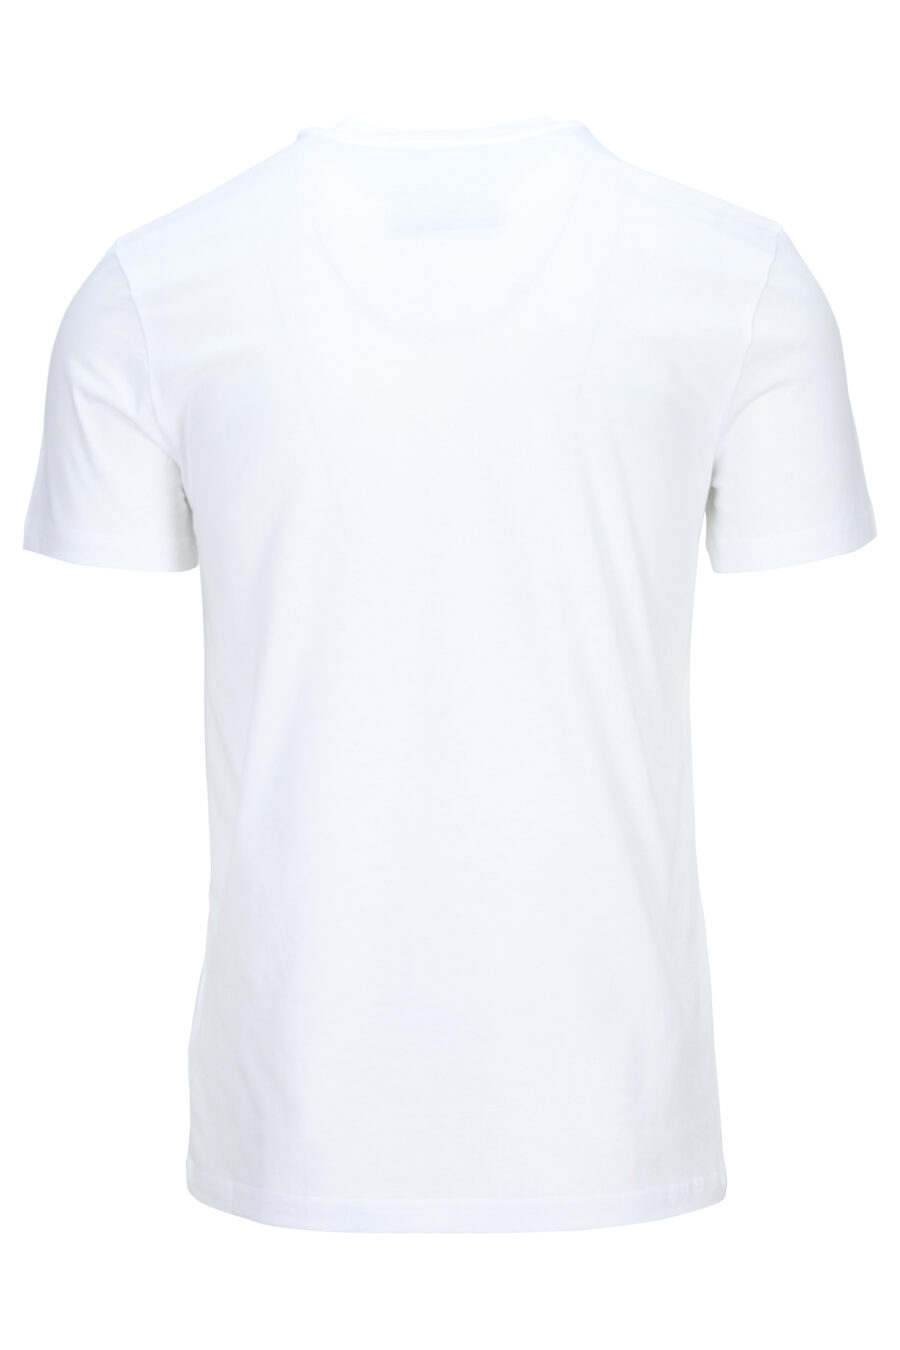 Weißes T-Shirt mit doppeltem Überschlag Frage - 889316649710 1